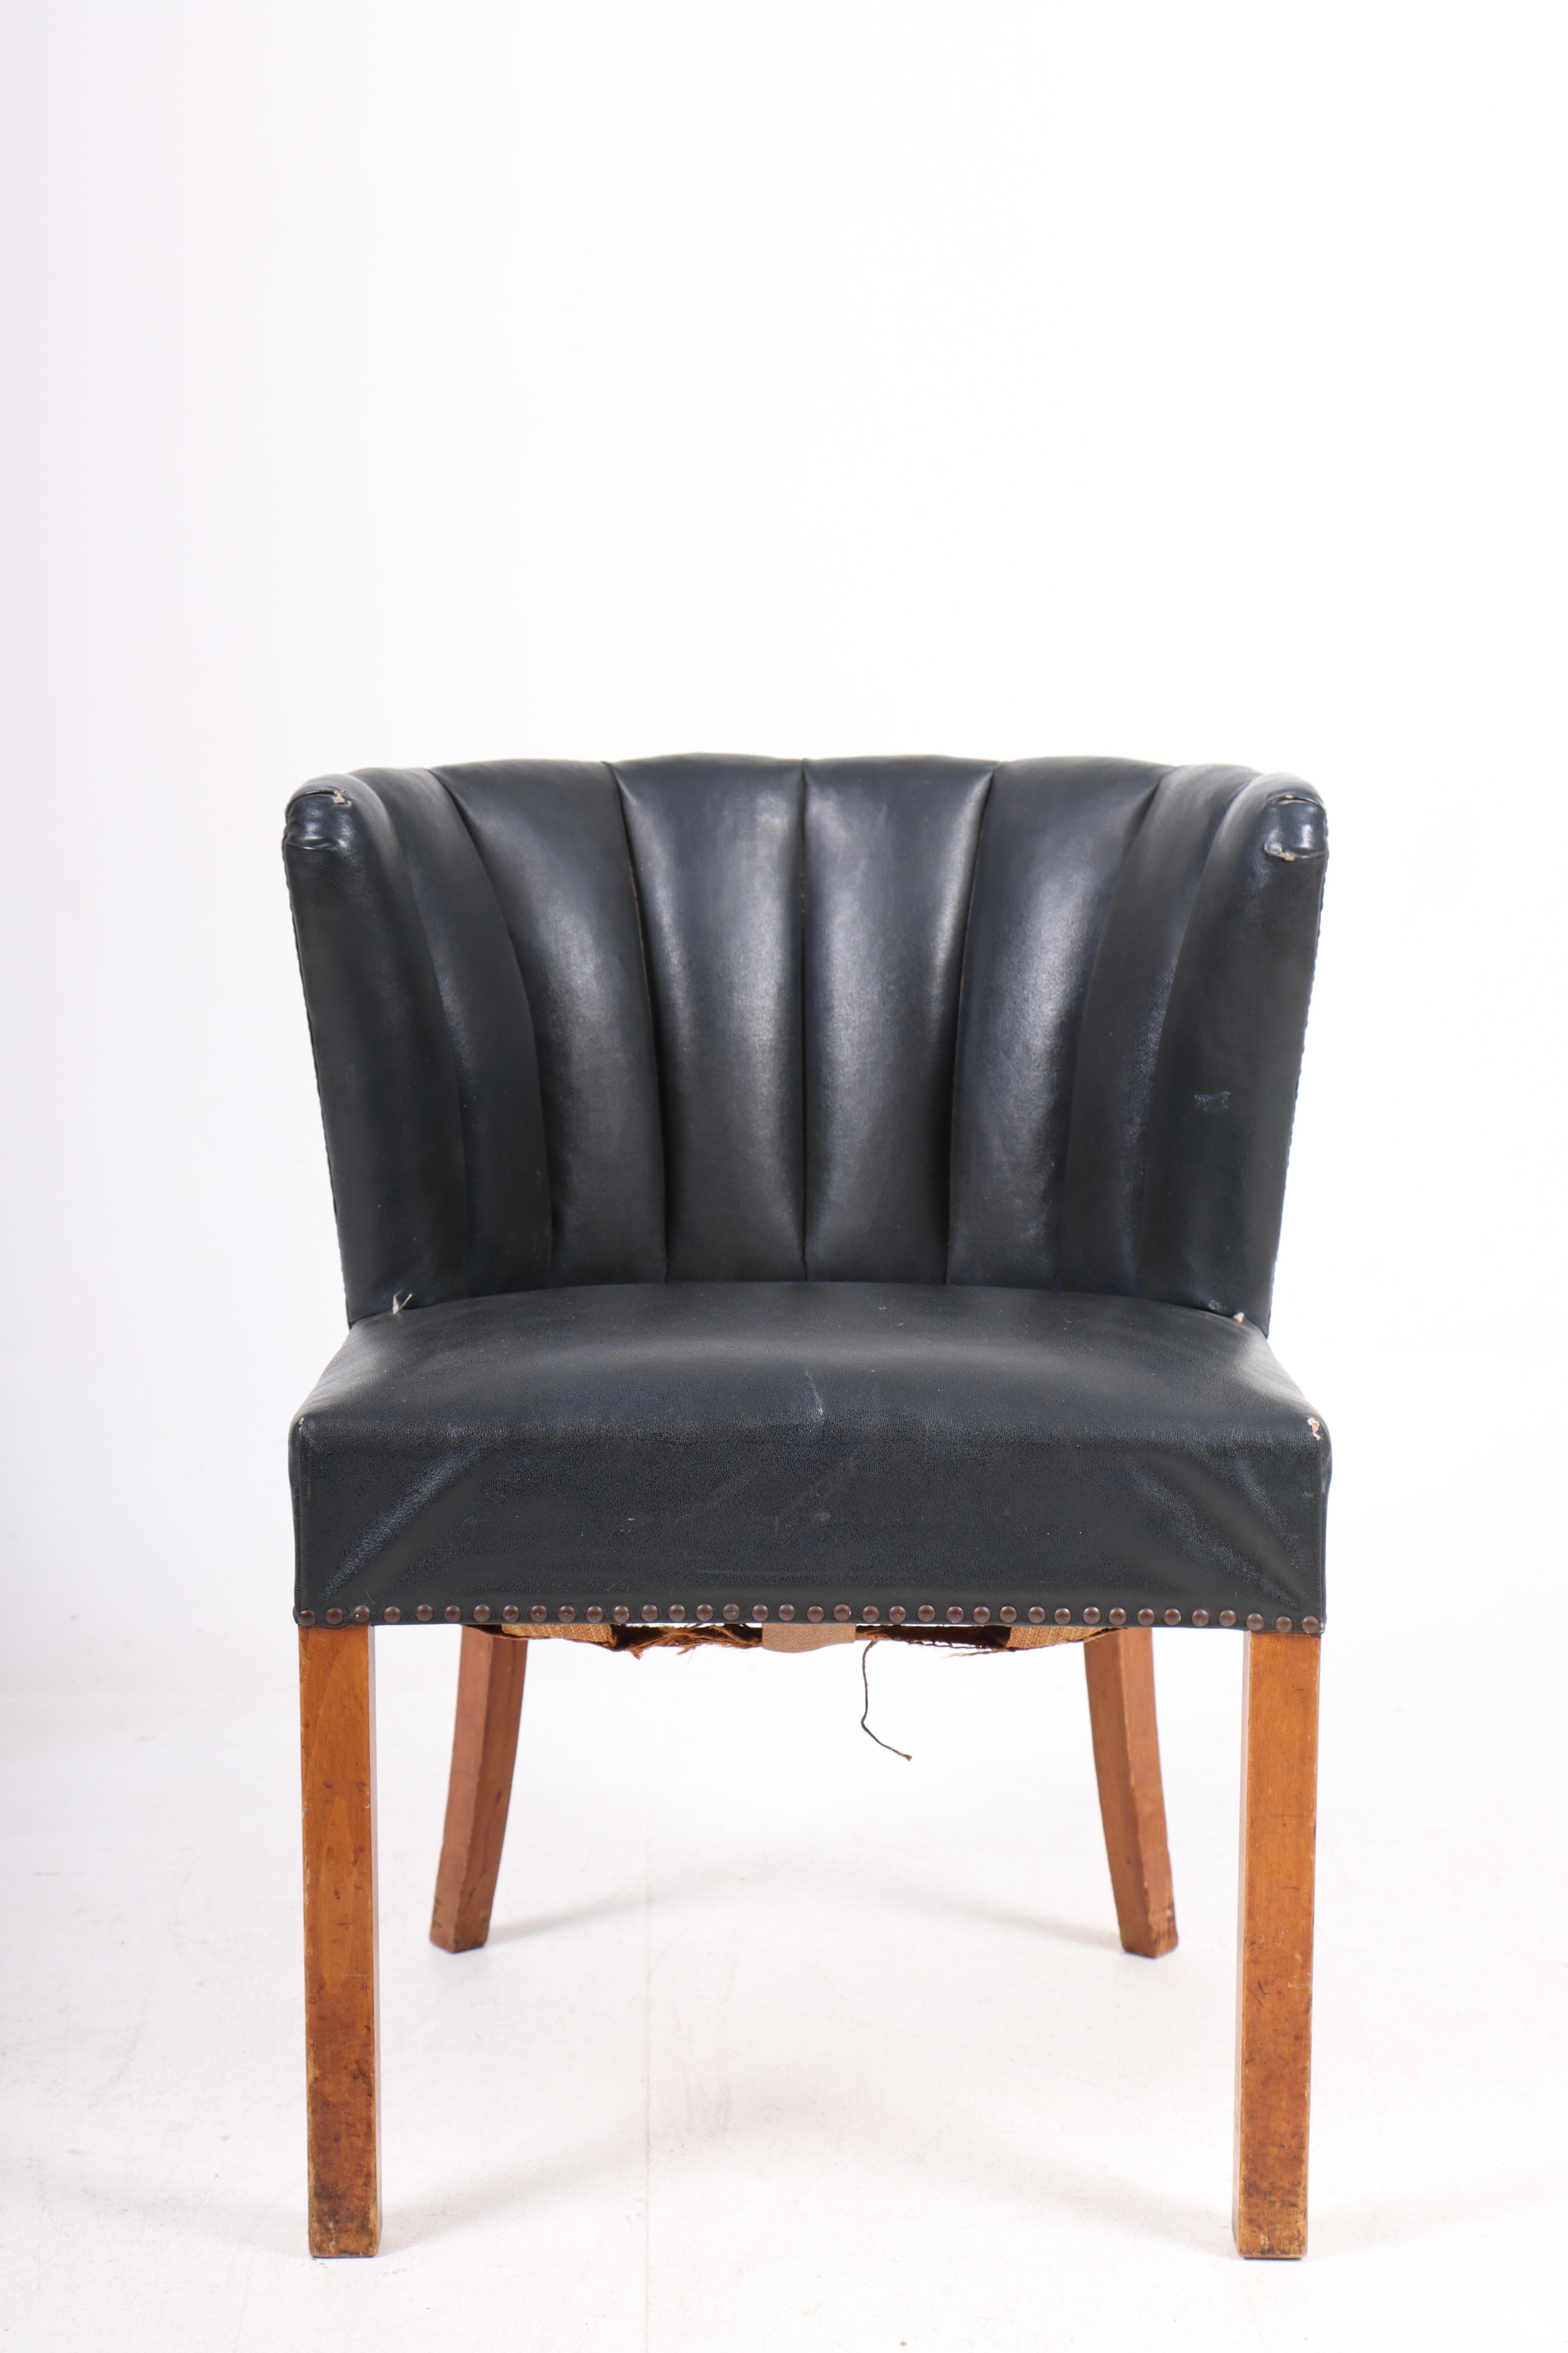 Sessel aus Kunstleder, entworfen und hergestellt von Fritz Hansen in den 1940er Jahren. Ursprünglicher Zustand.